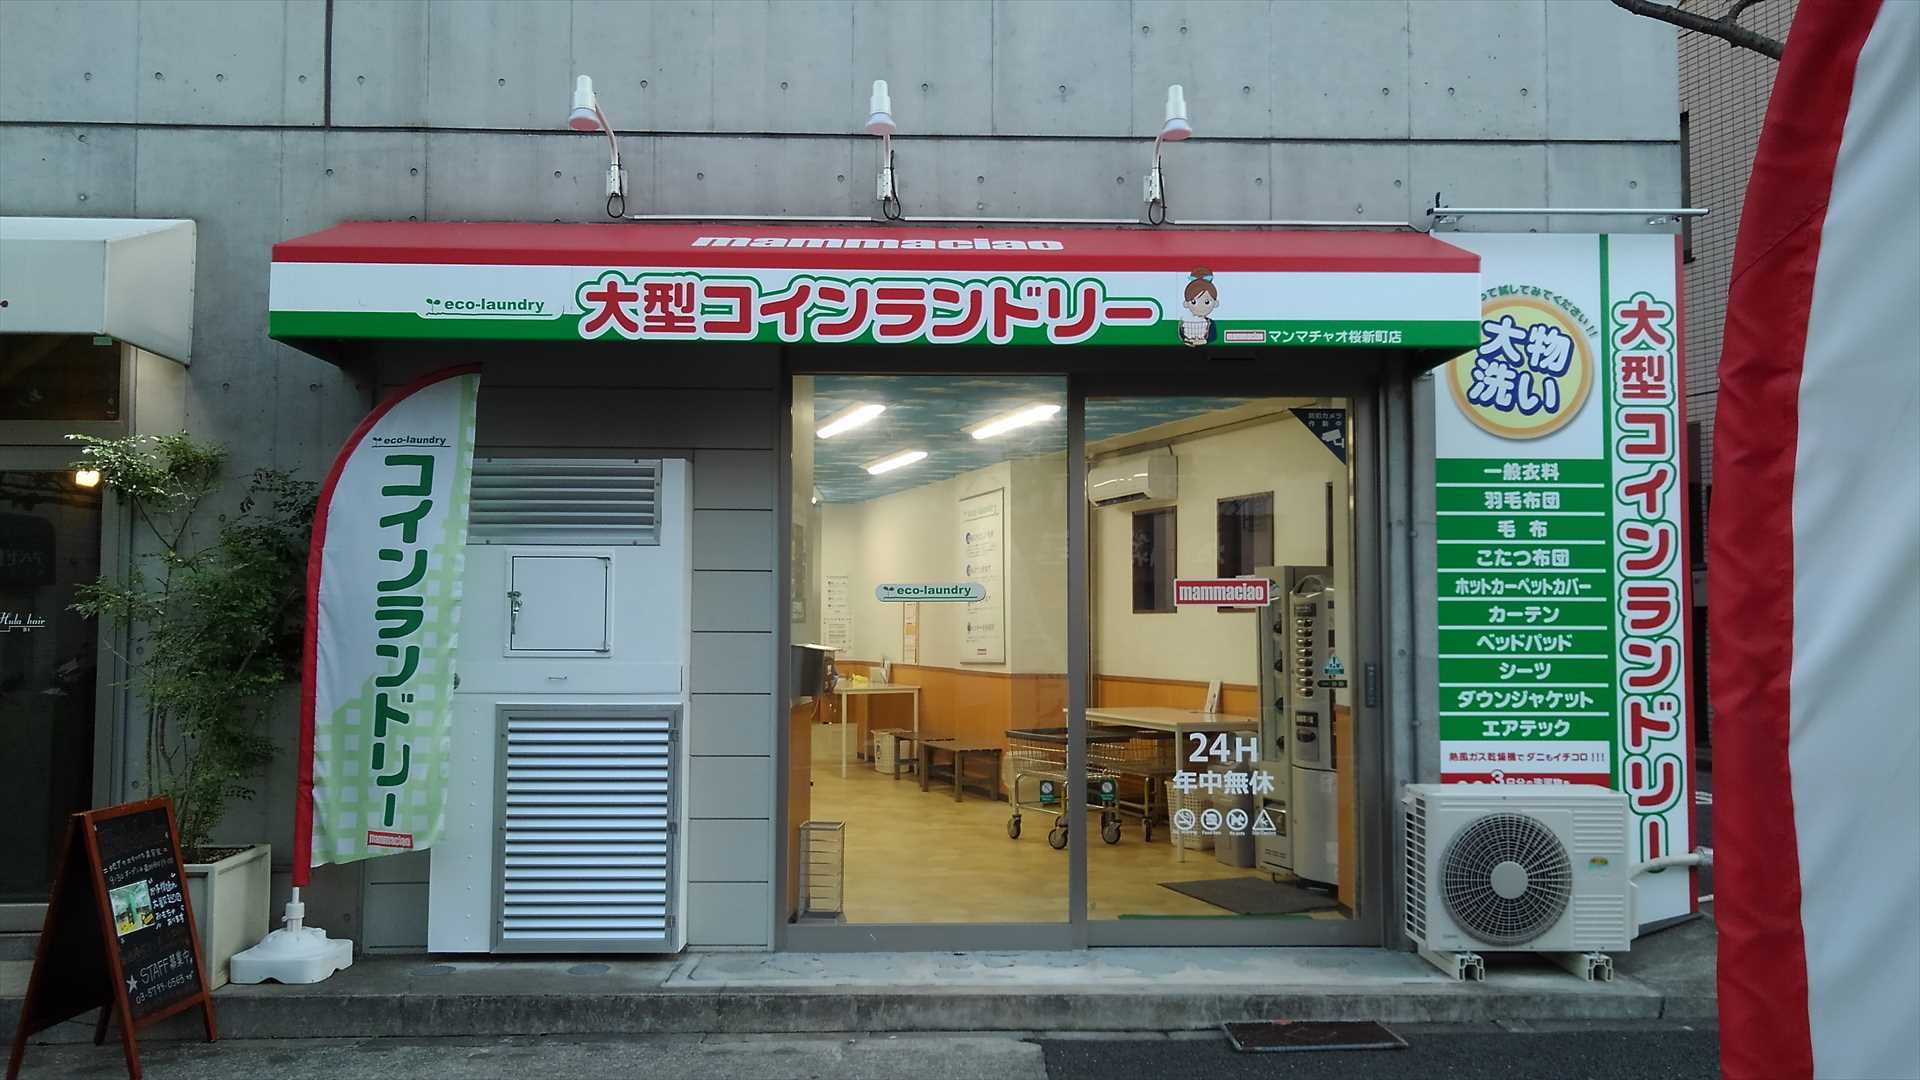 「大型コインランドリーマンマチャオ桜新町店」(東京都世田谷区)